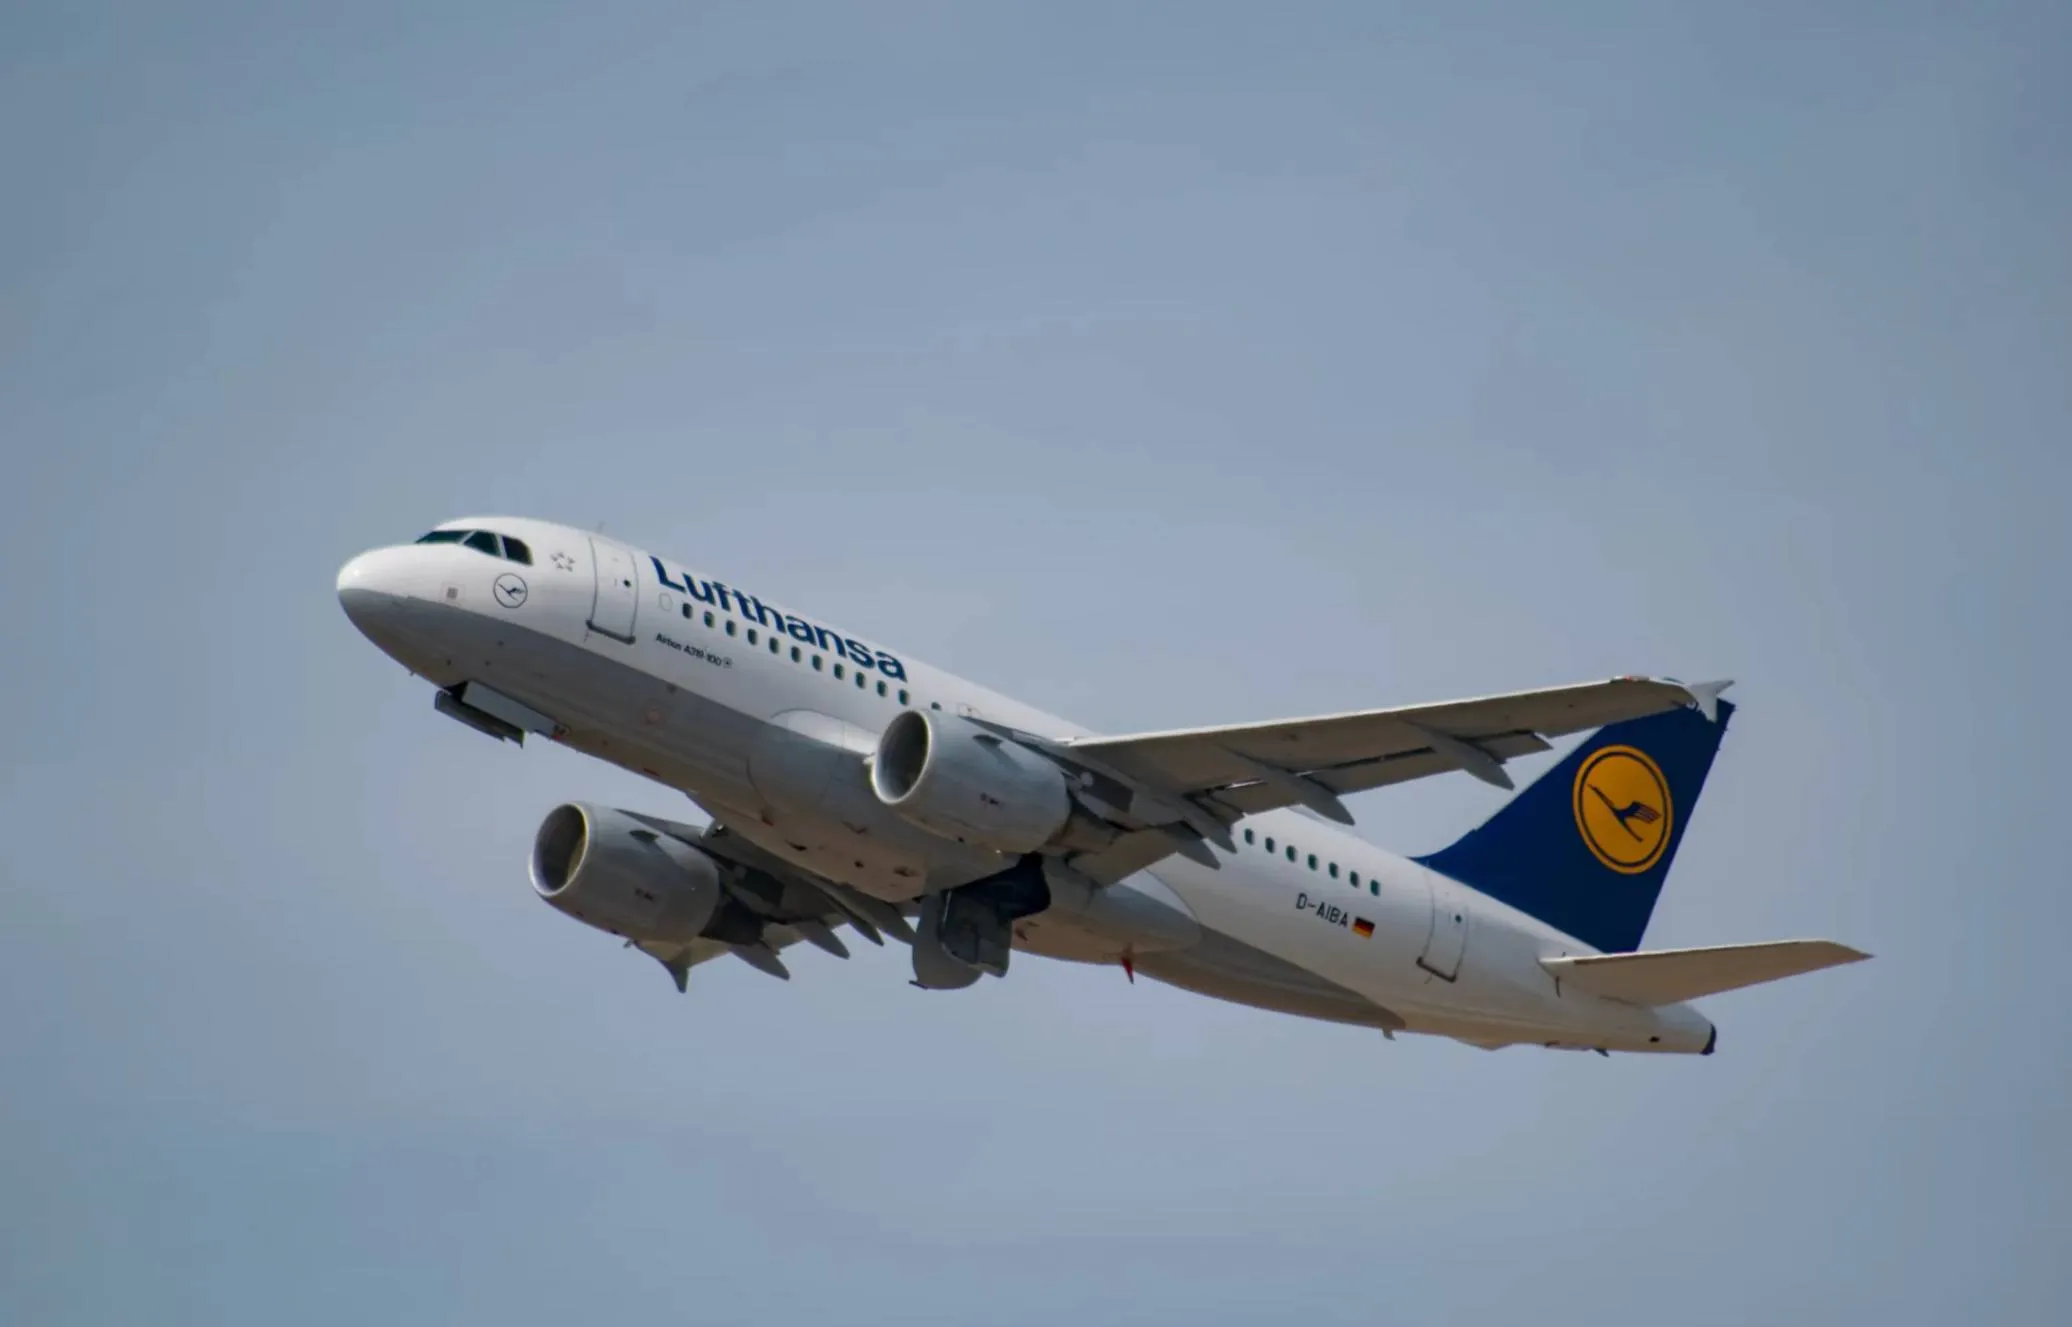 Самолёт Lufthansa совершил экстренную посадку из-за задымления в кабине пилотов